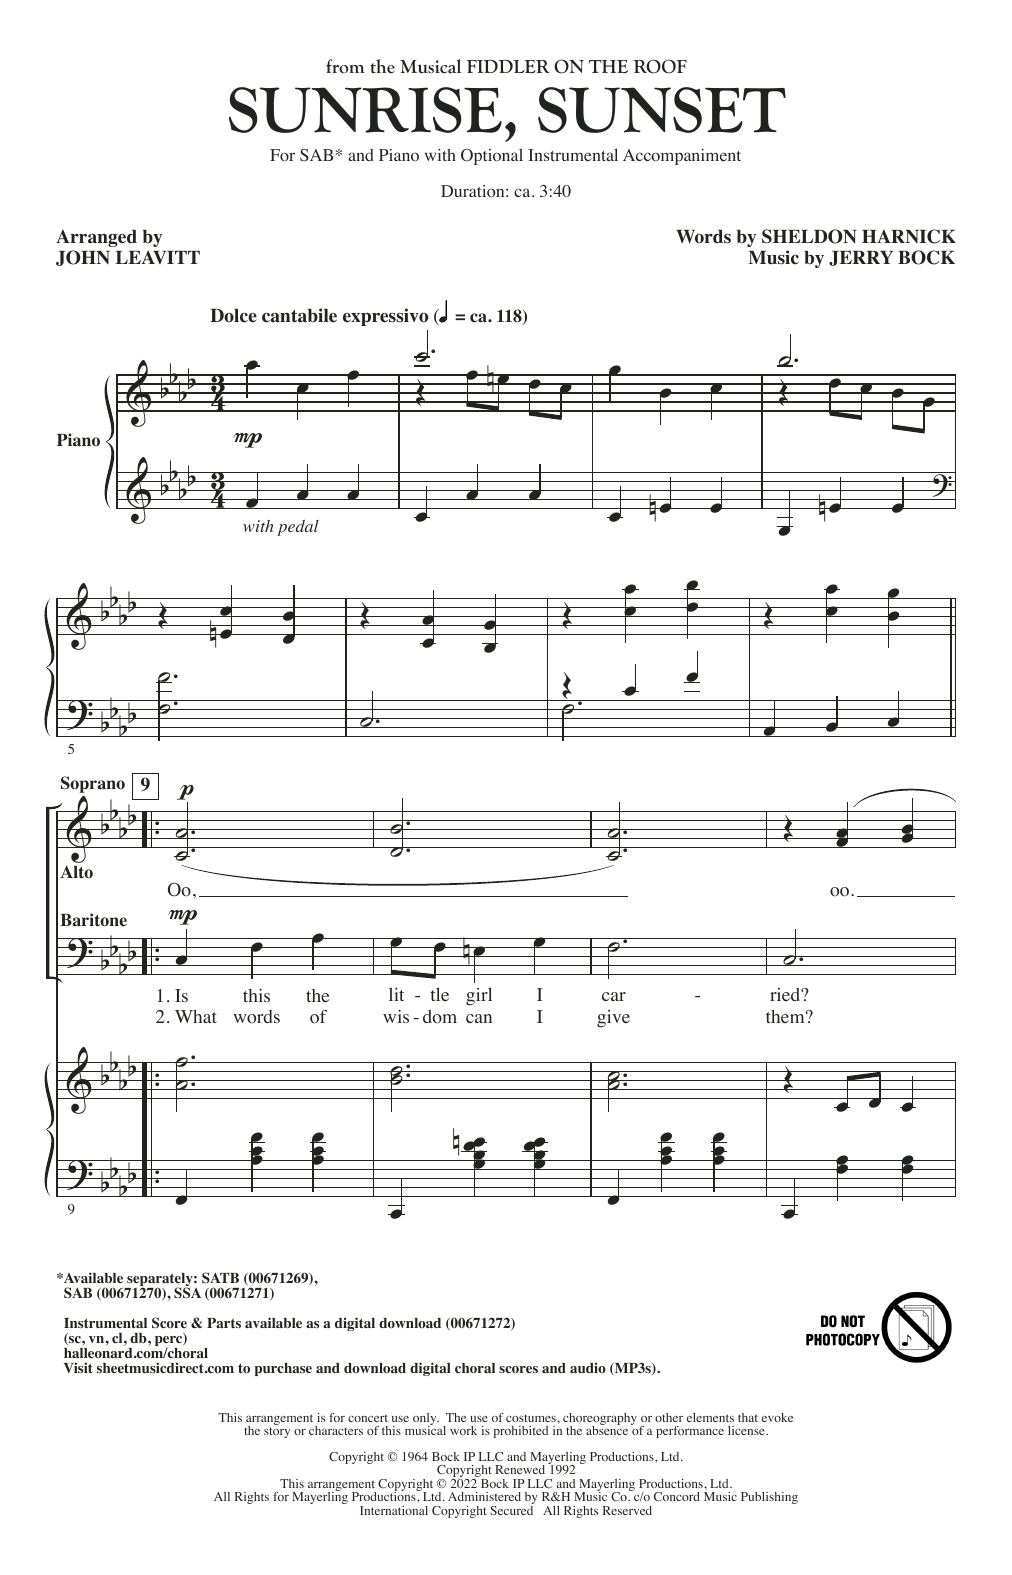 Bock & Harnick Sunrise, Sunset (from Fiddler On The Roof) (arr. John Leavitt) Sheet Music Notes & Chords for SSA Choir - Download or Print PDF